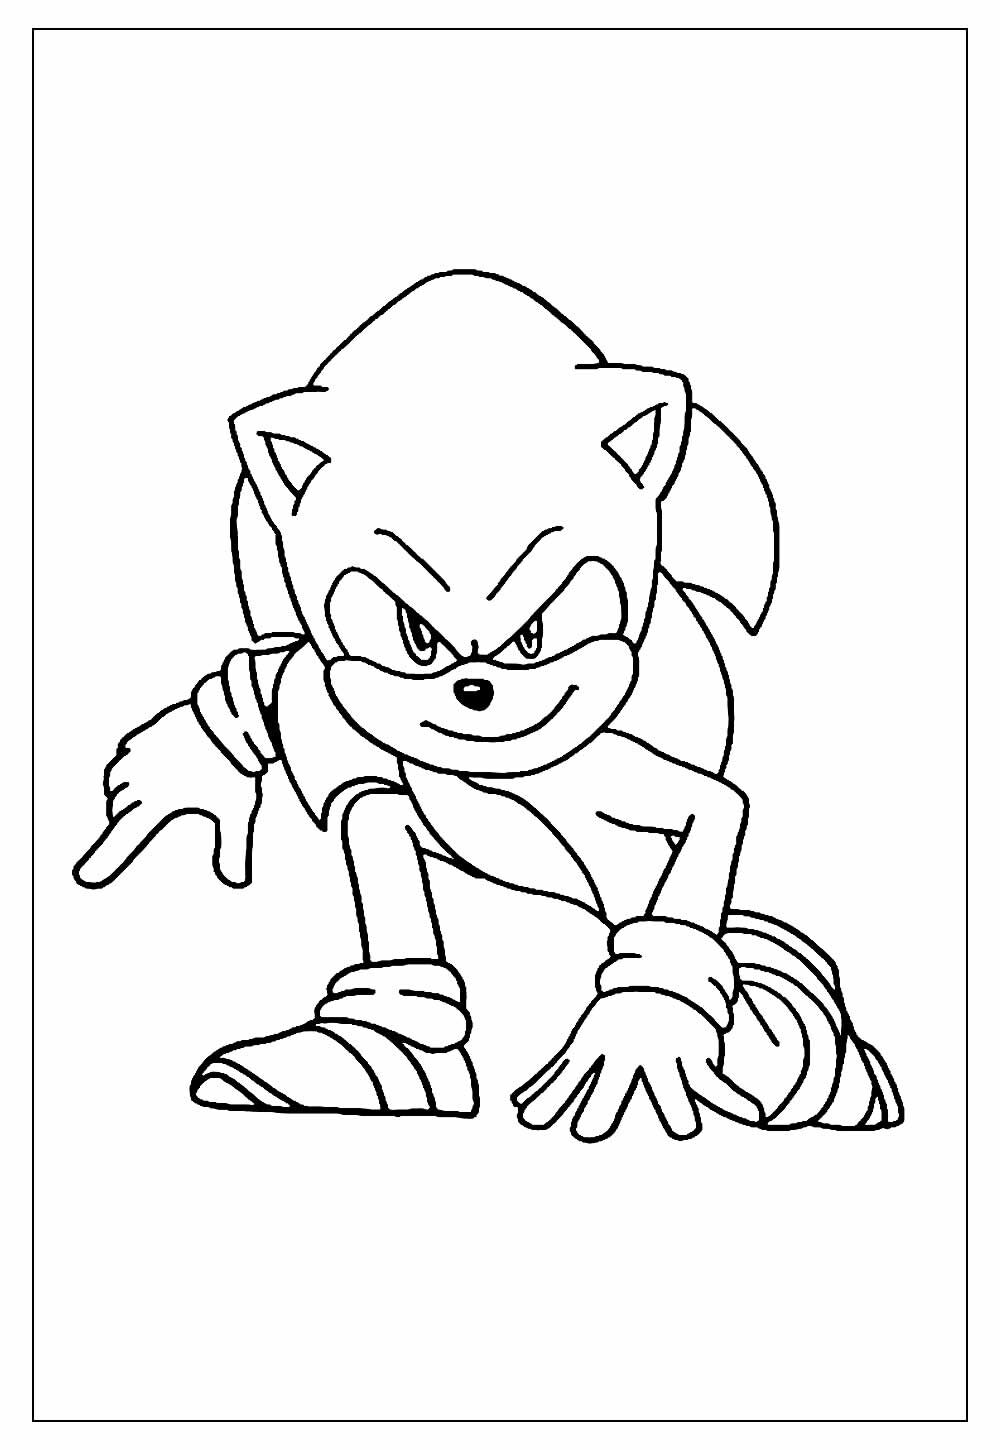 Desenho de Mecha Sonic para colorir - Tudodesenhos